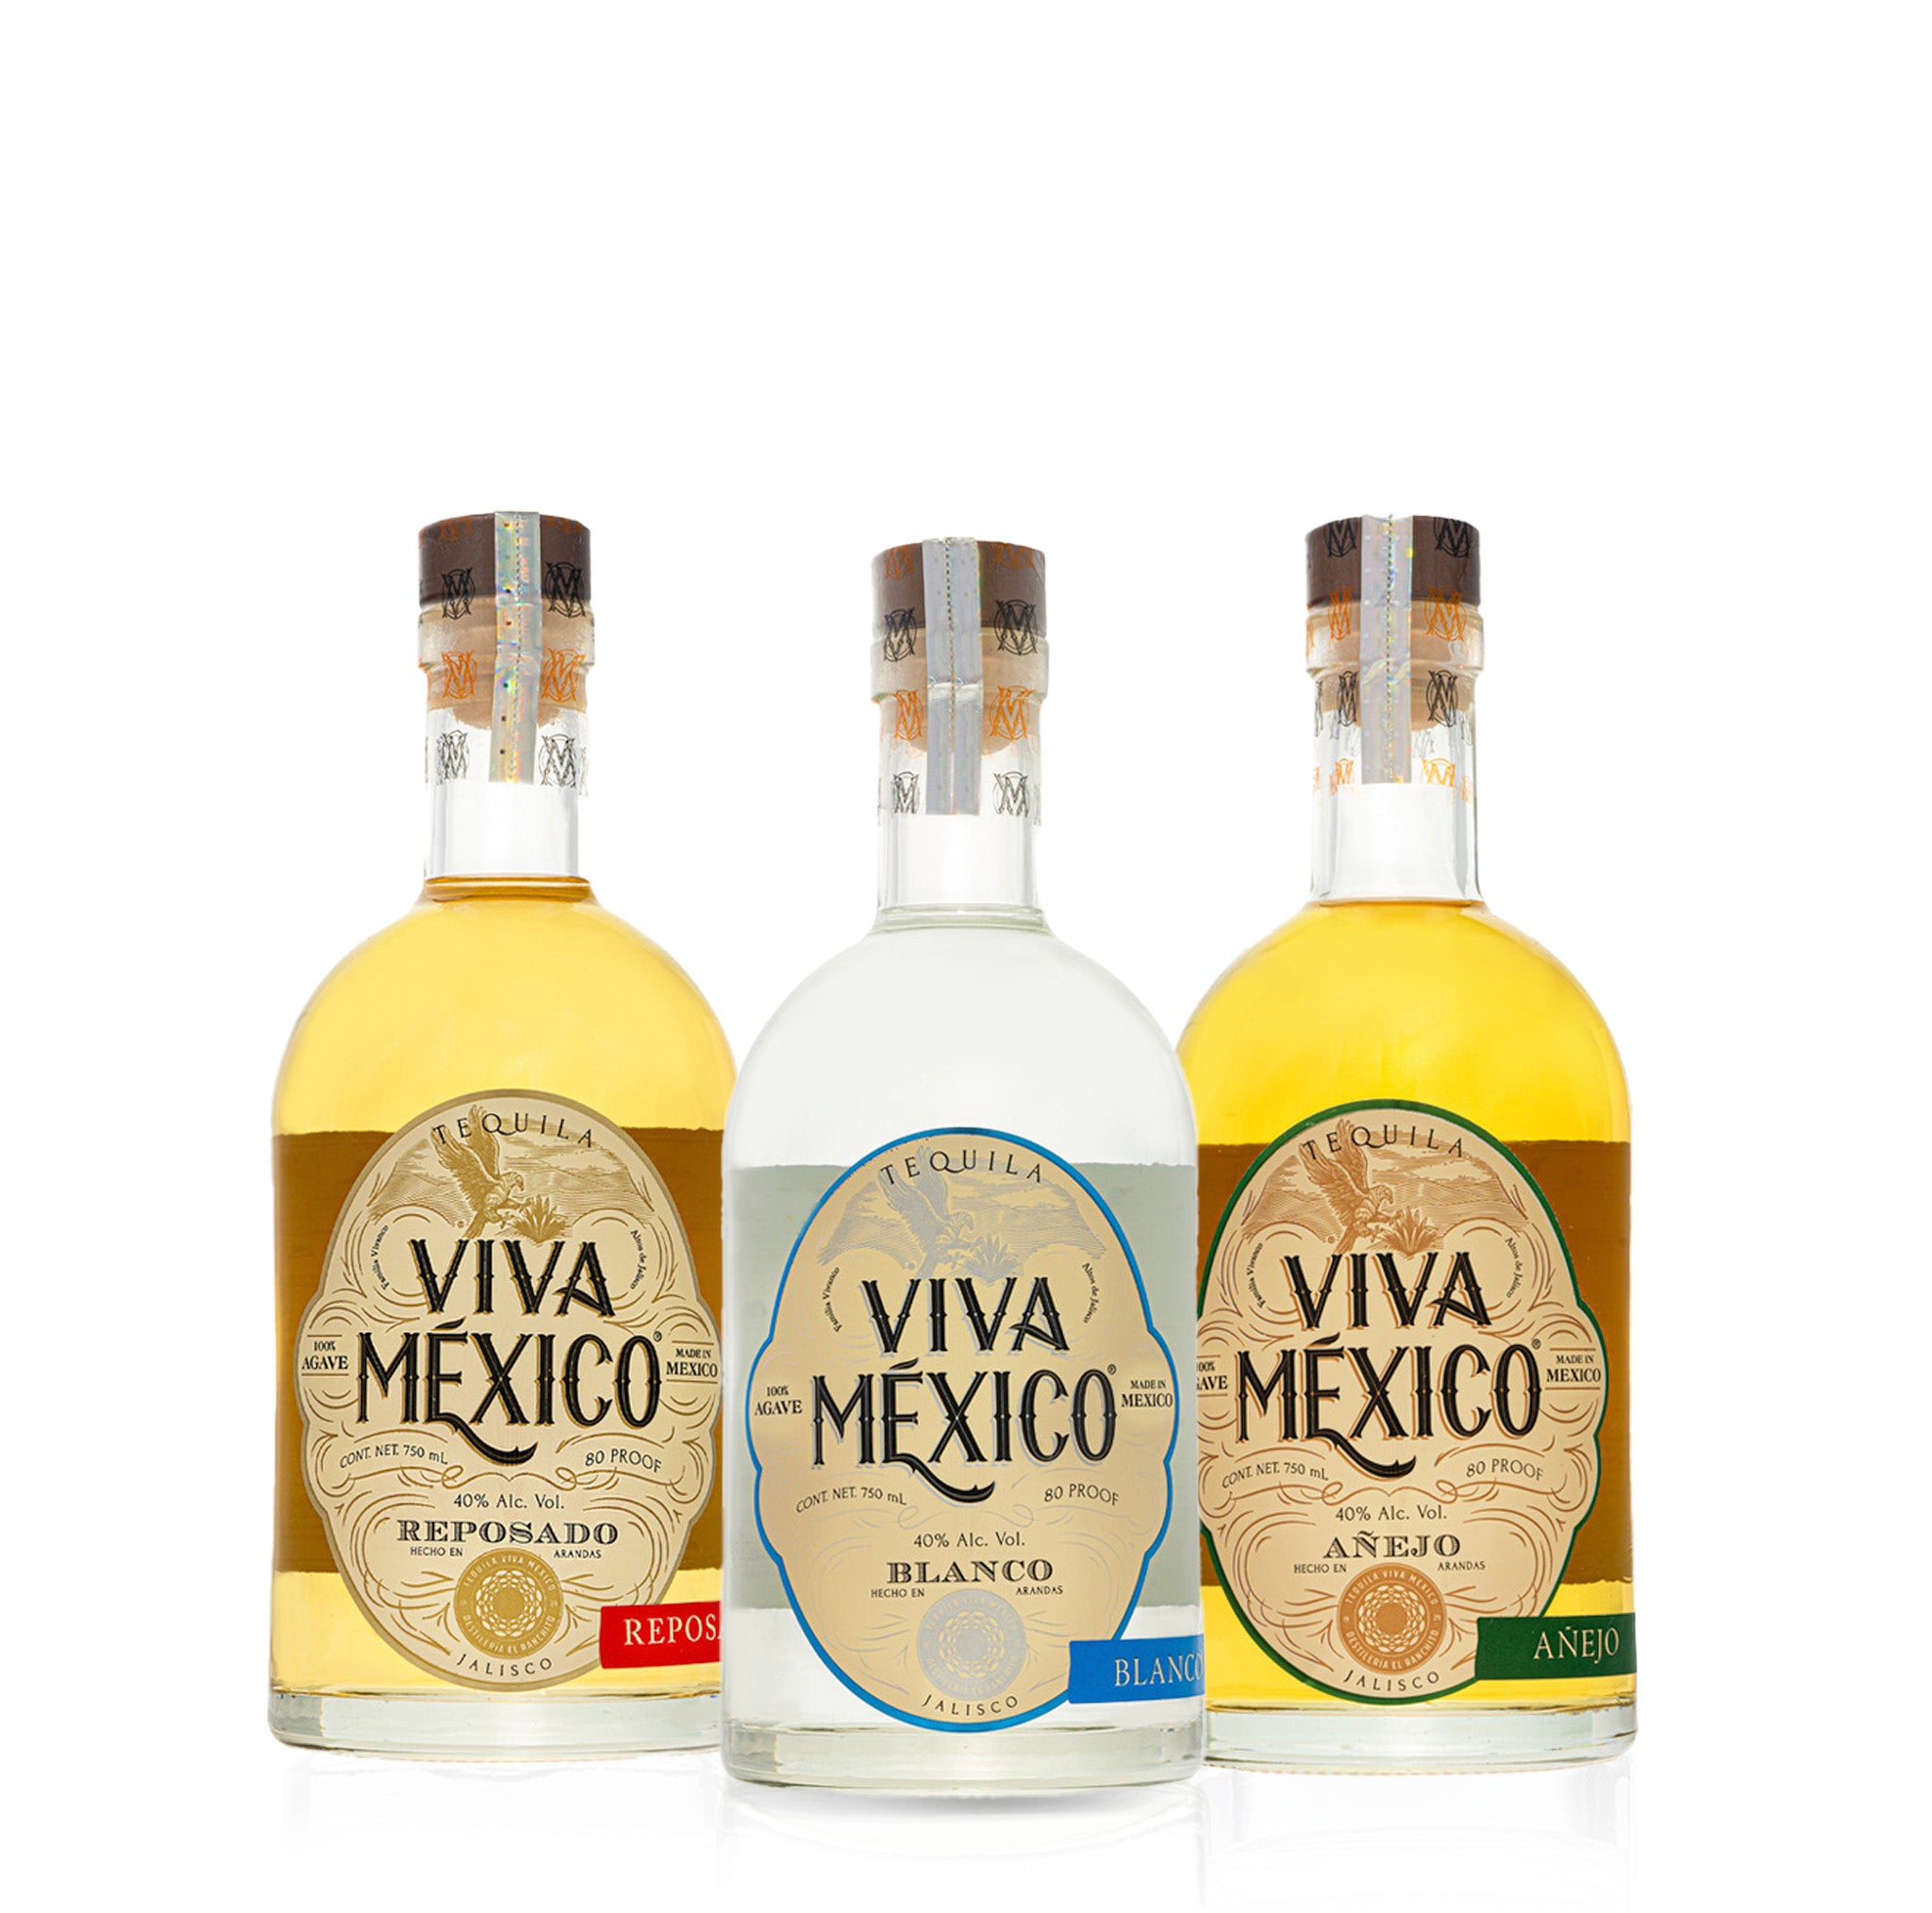 Viva Mexico Family Collection